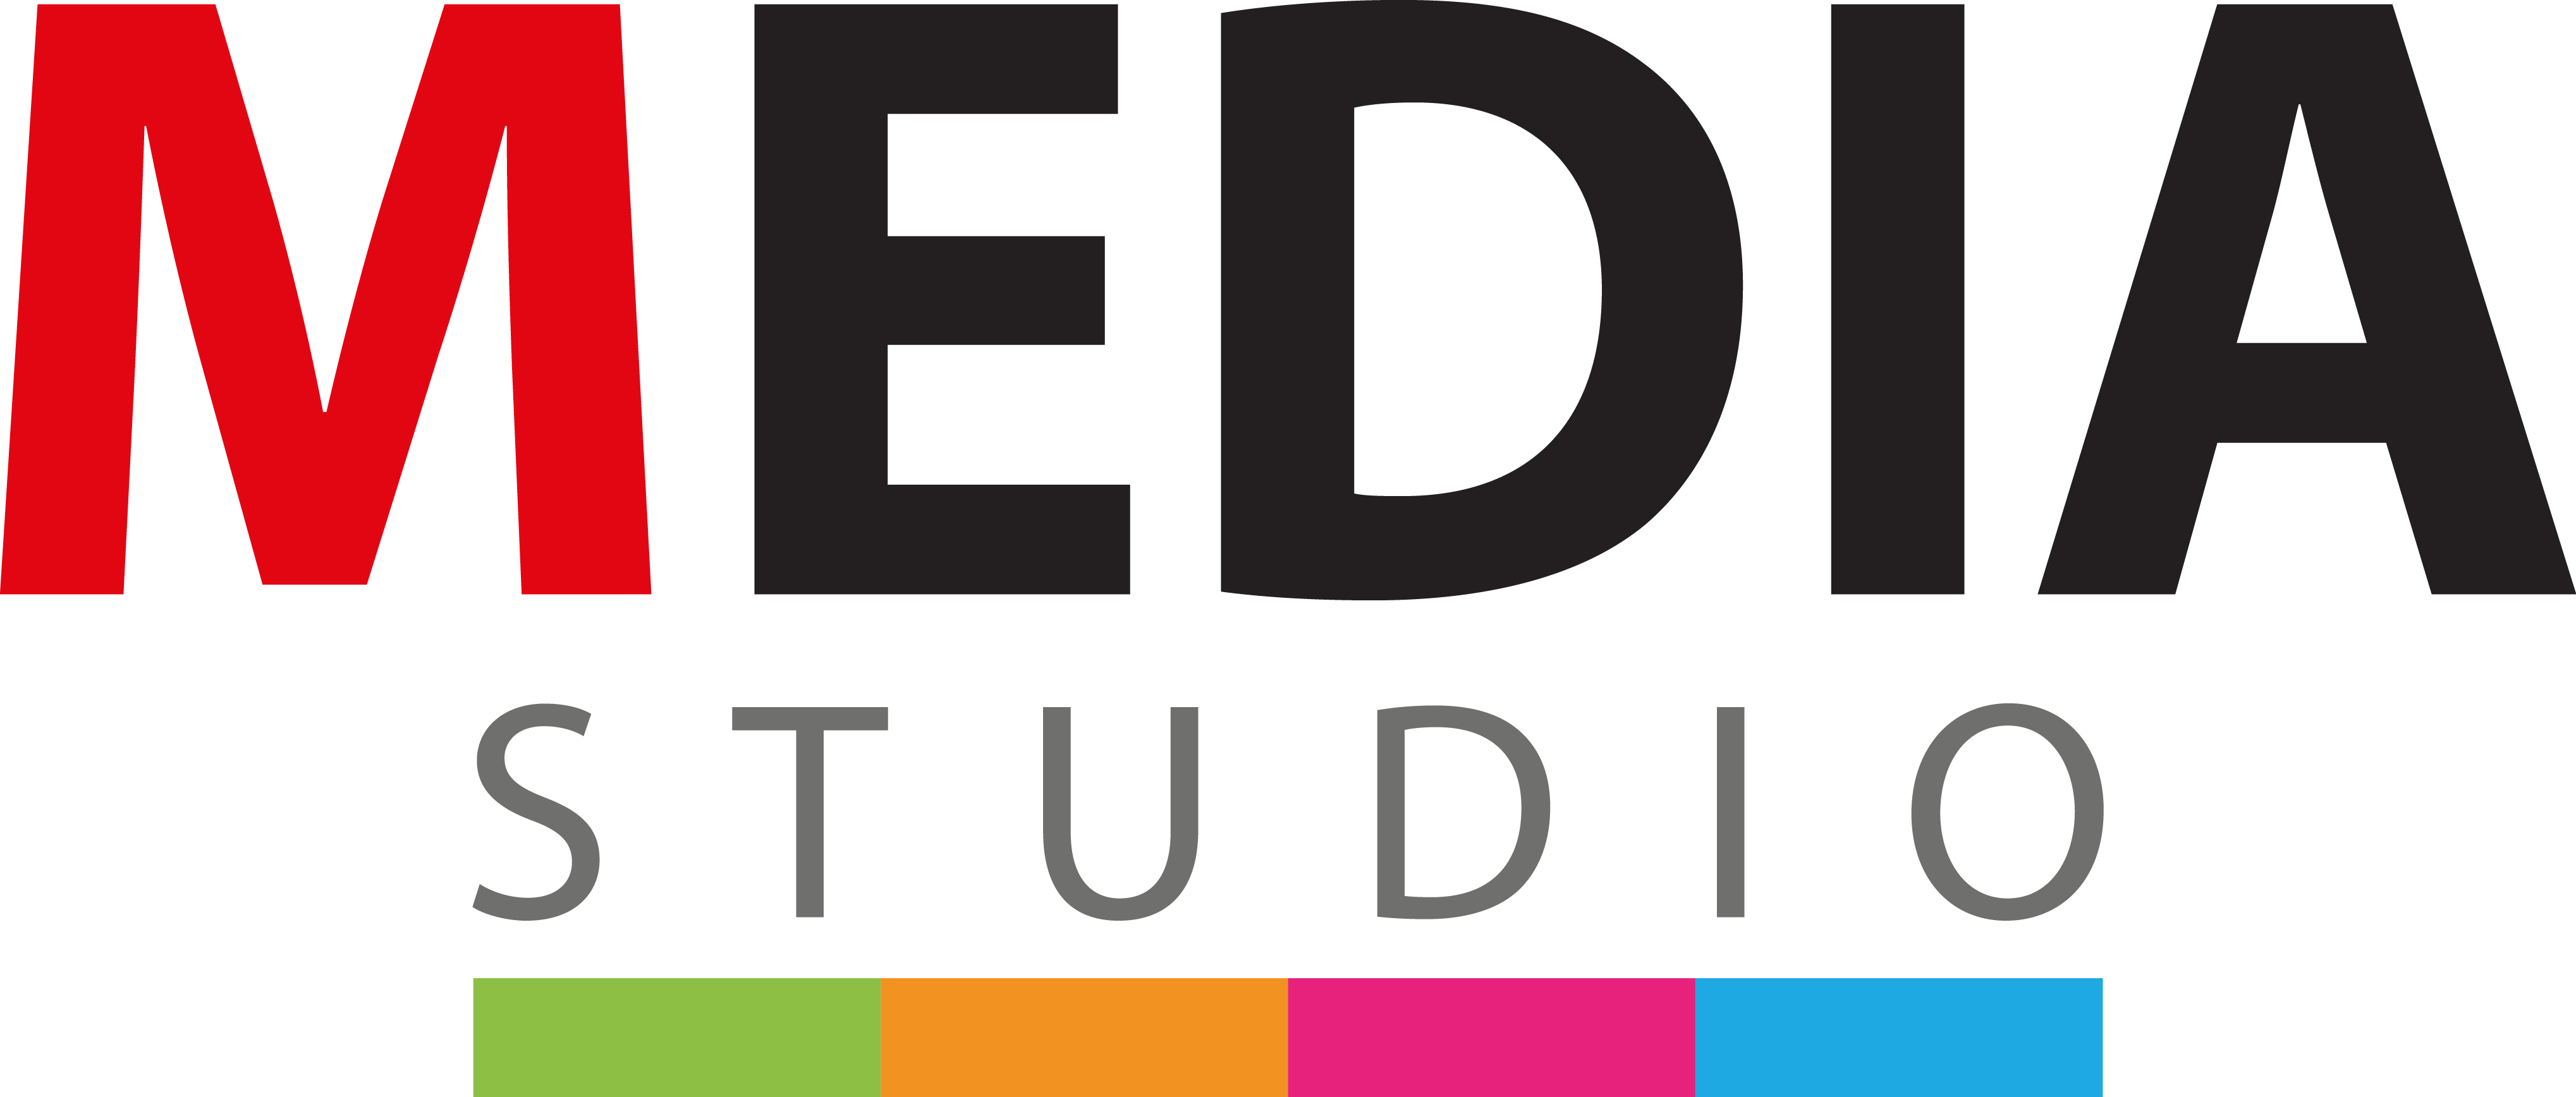 Media Studio Logo, image, download logo | LogoWiki.net